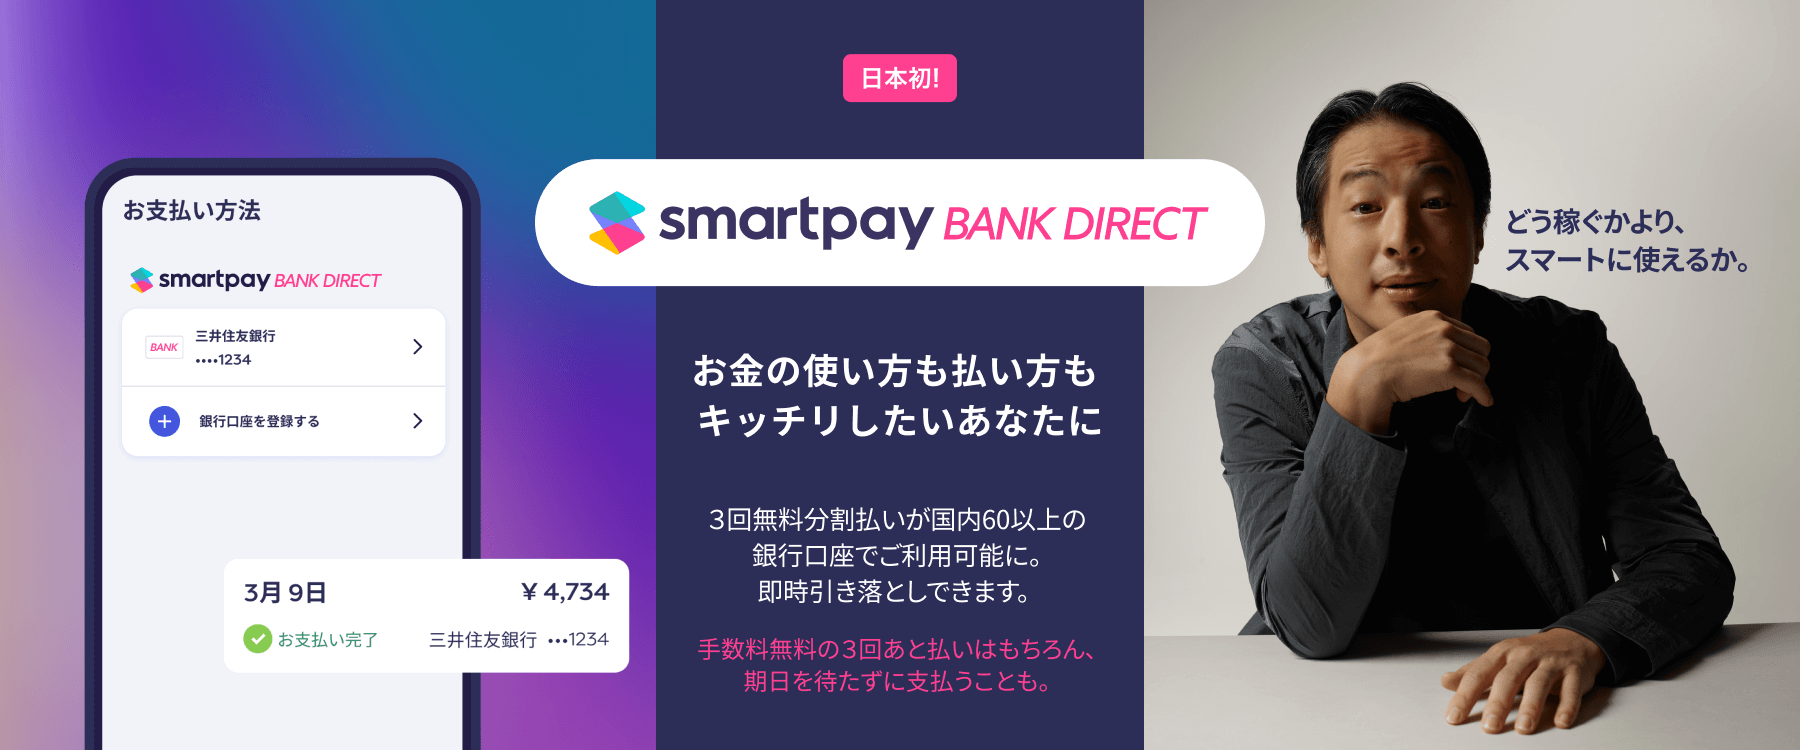 【日本初】Smartpay、BNPL サービス「Smartpay Bank Direct」発表 67の銀行口座から即時引き落とし可能